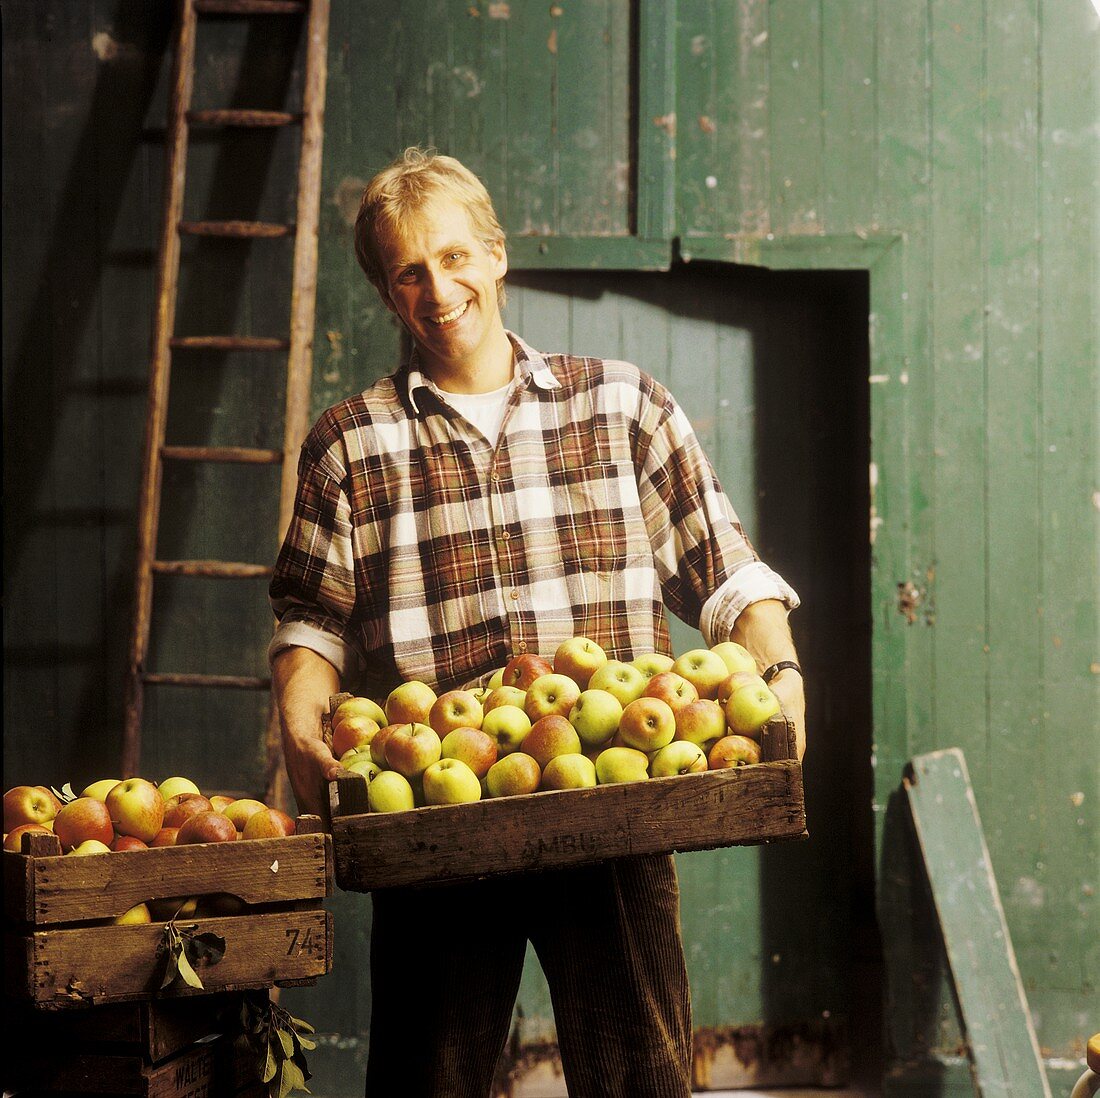 Mann hält eine Steige mit Äpfeln